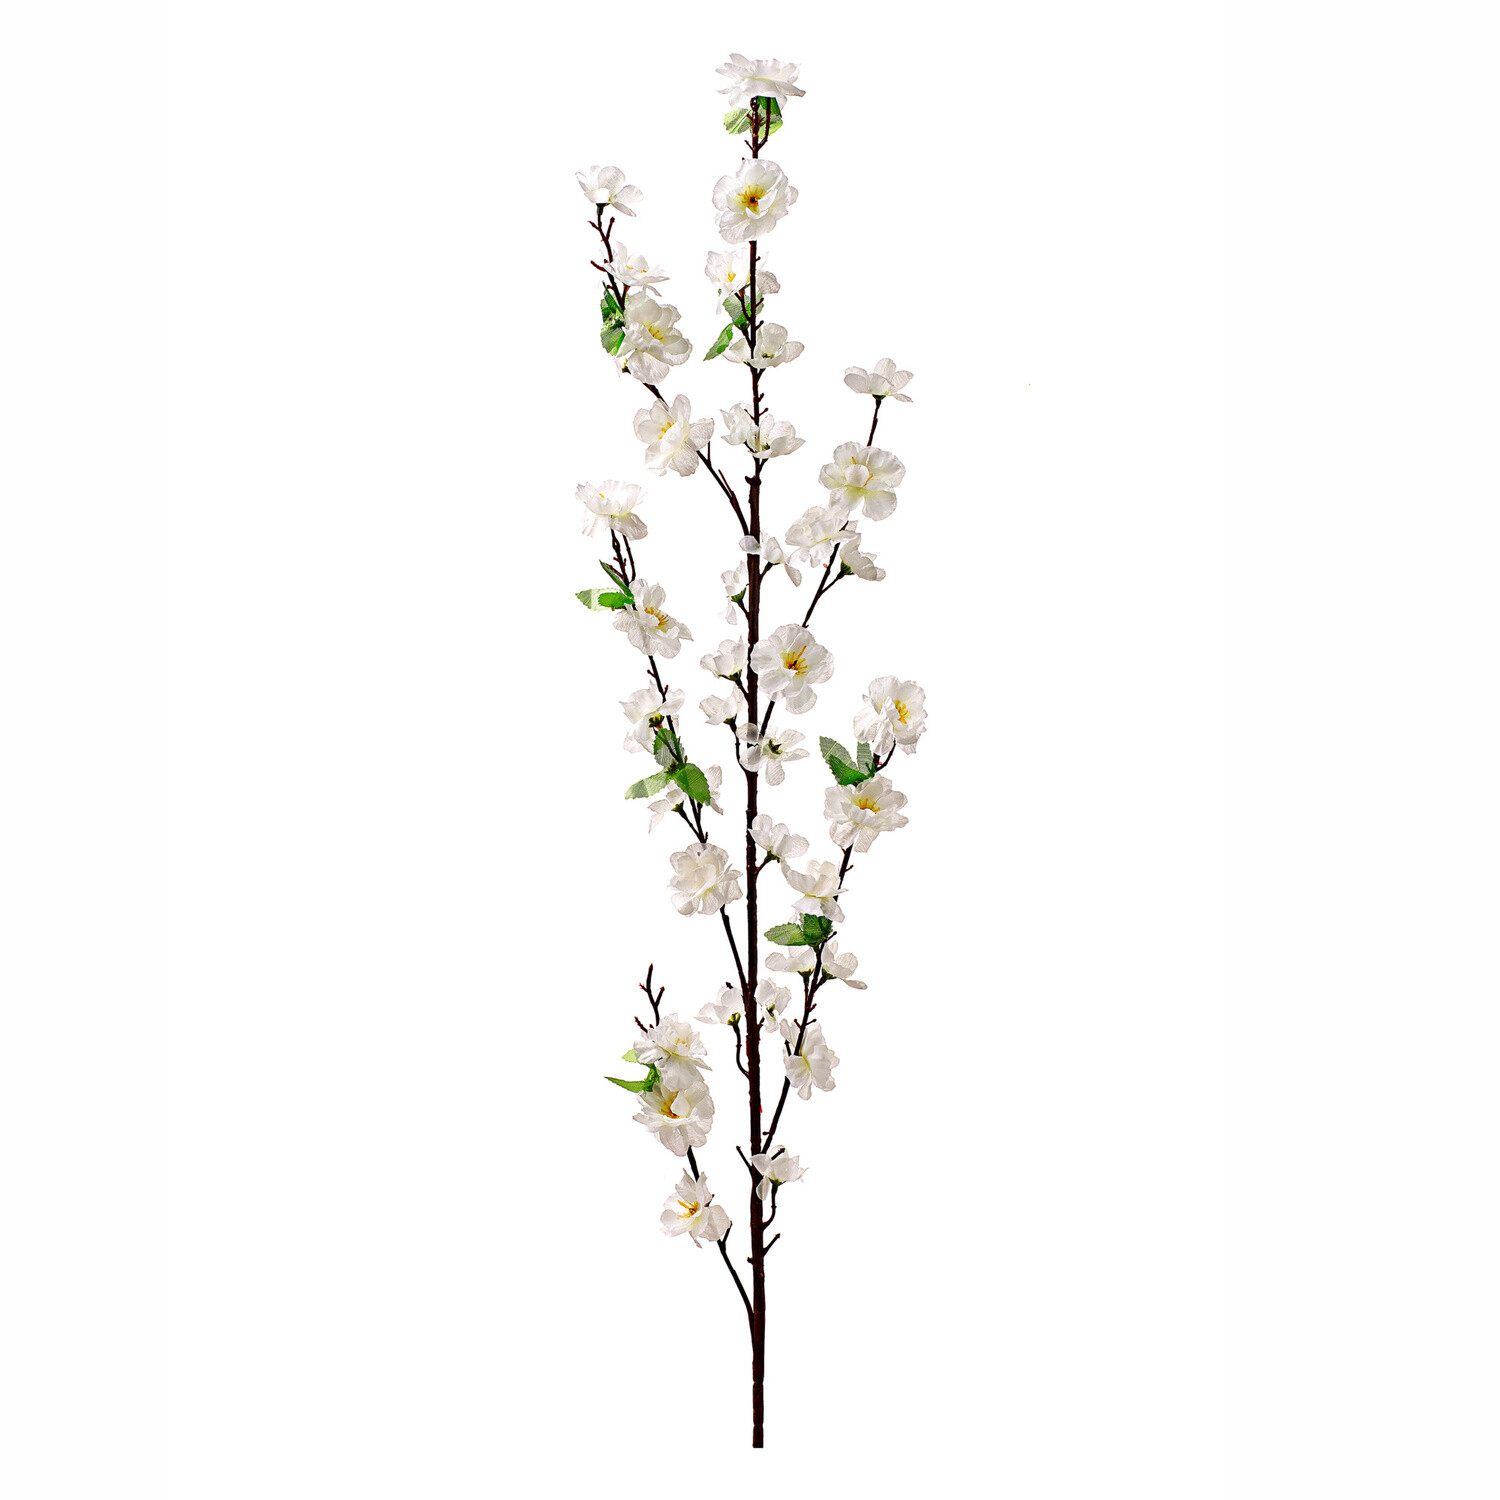 Ramură cu flori de cires » Astoreo - Totul pentru confortul casei